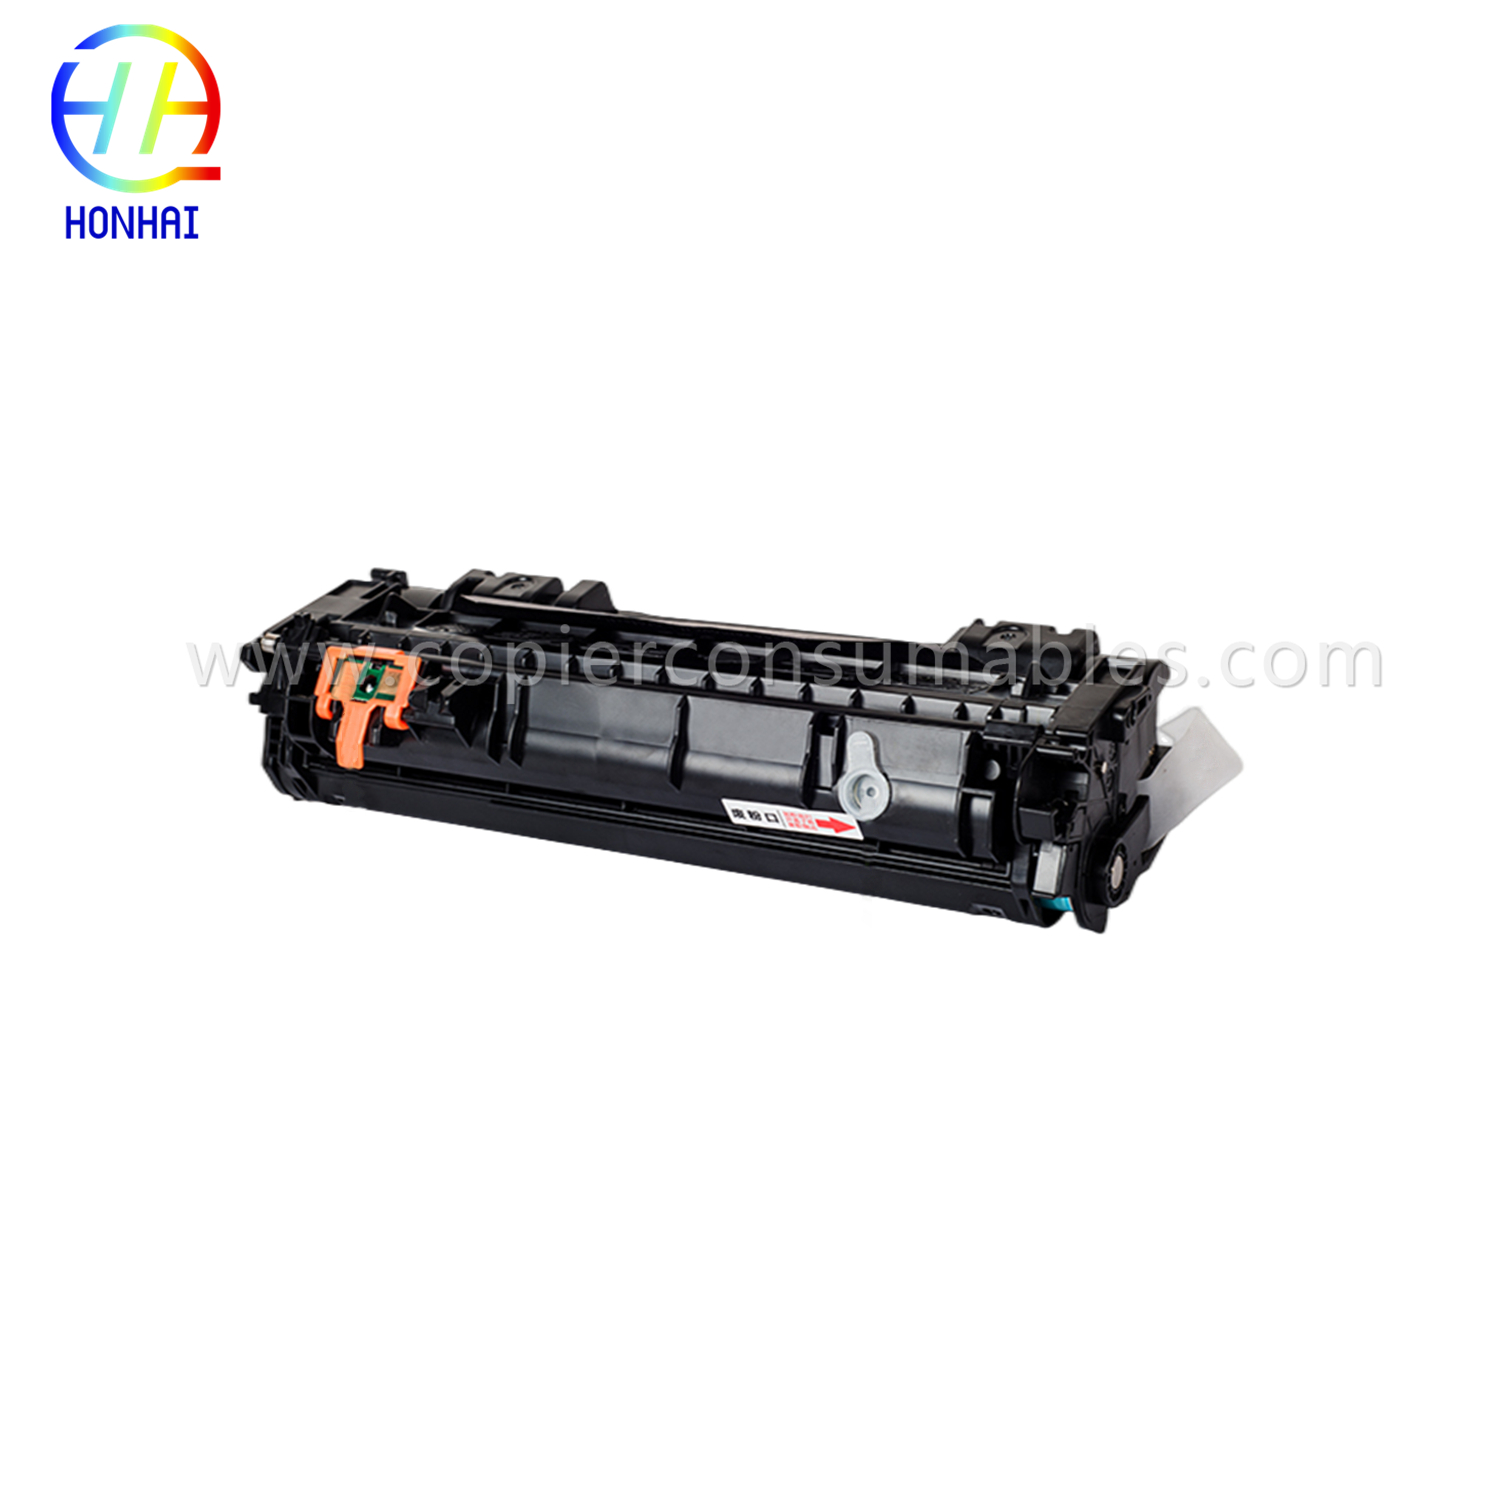 https://www.copierhonhaitech.com/toner-cartridge-for-hp-laserjet-1160-1320-q5949a-49a-oem-product/